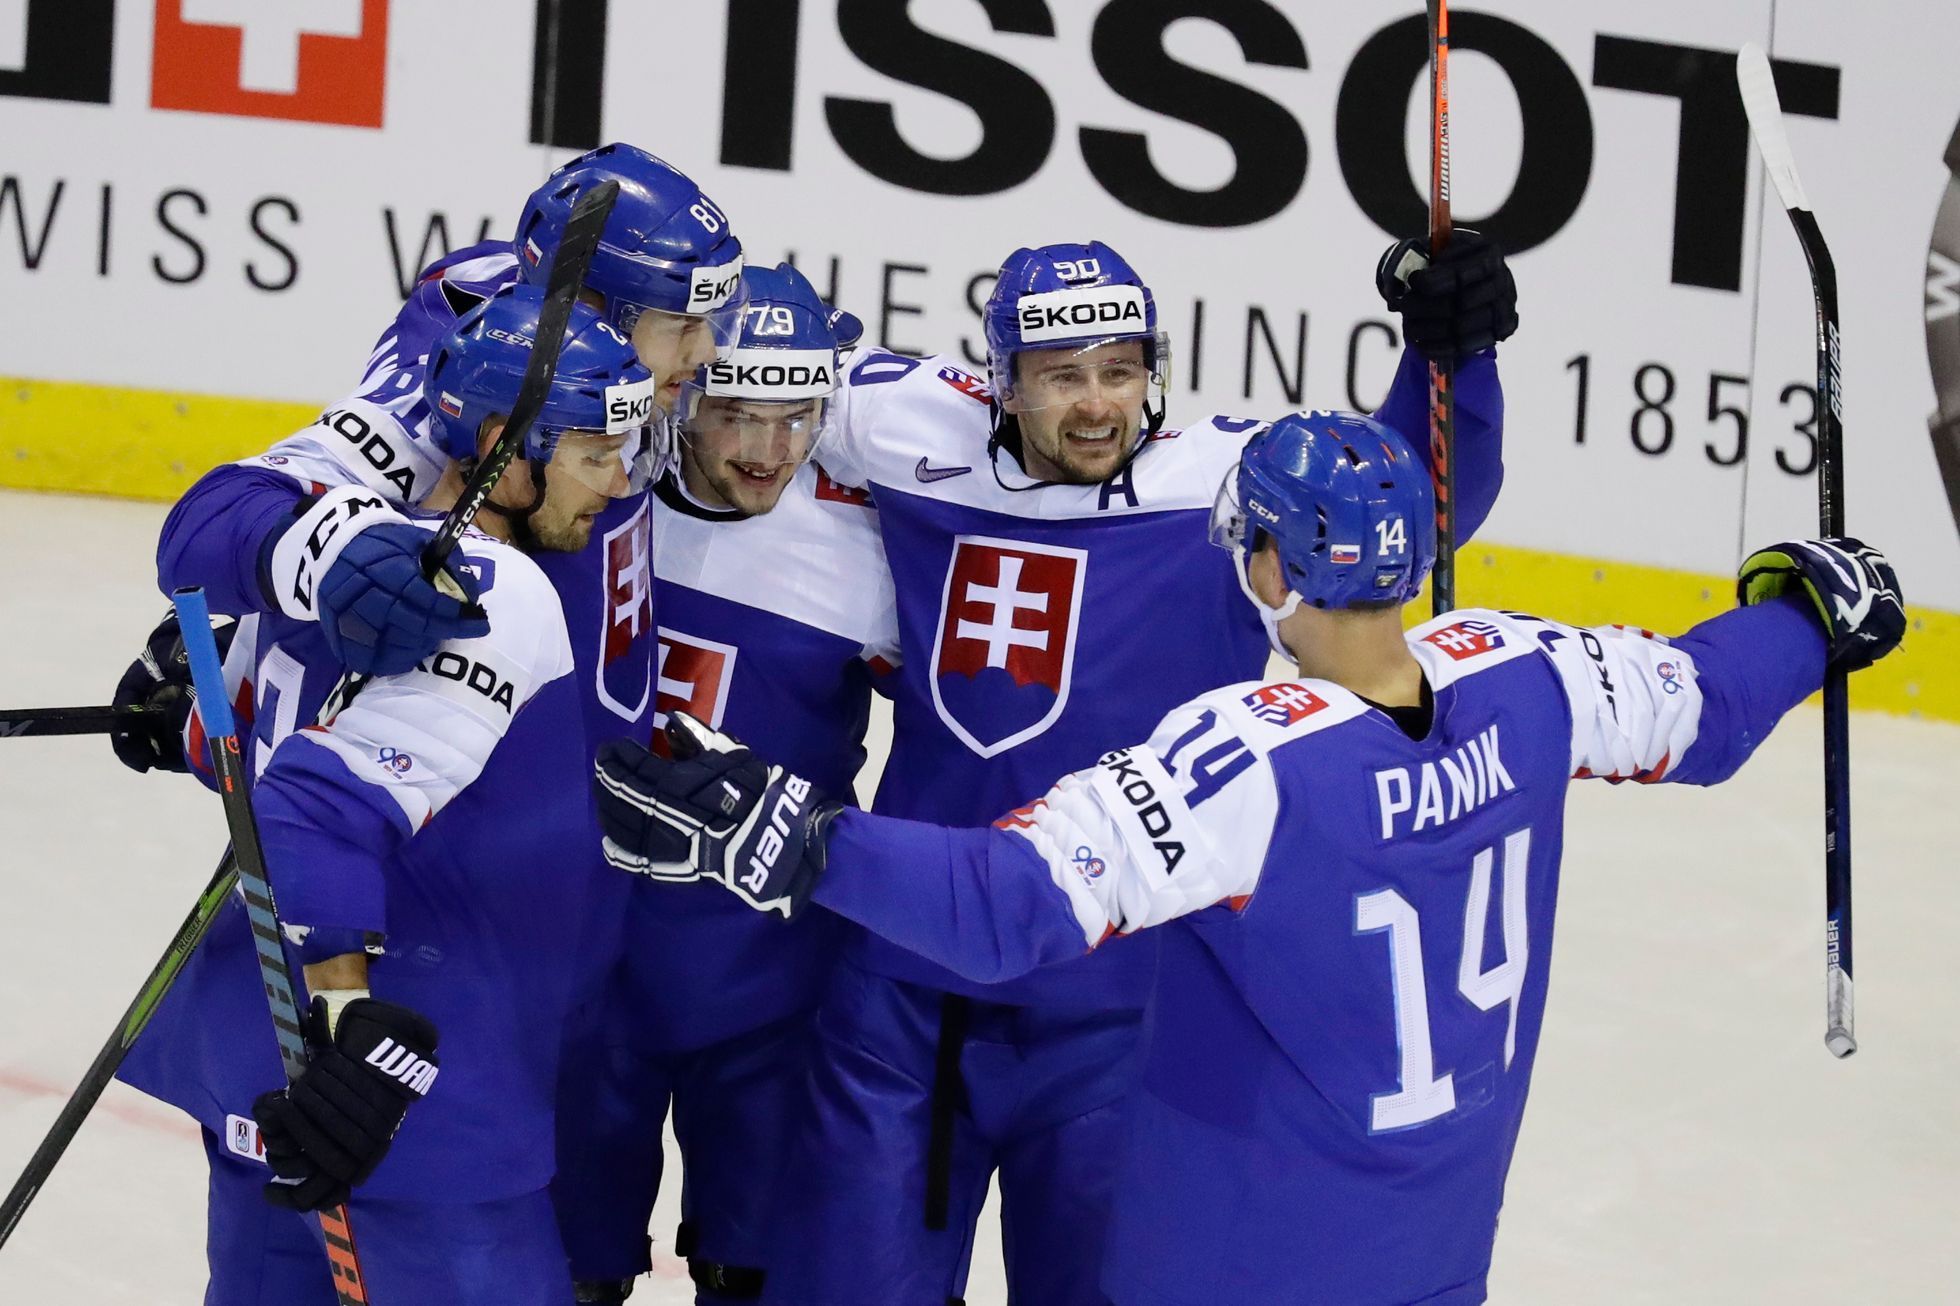 MS v hokeji 2019: Slovensko - Německo